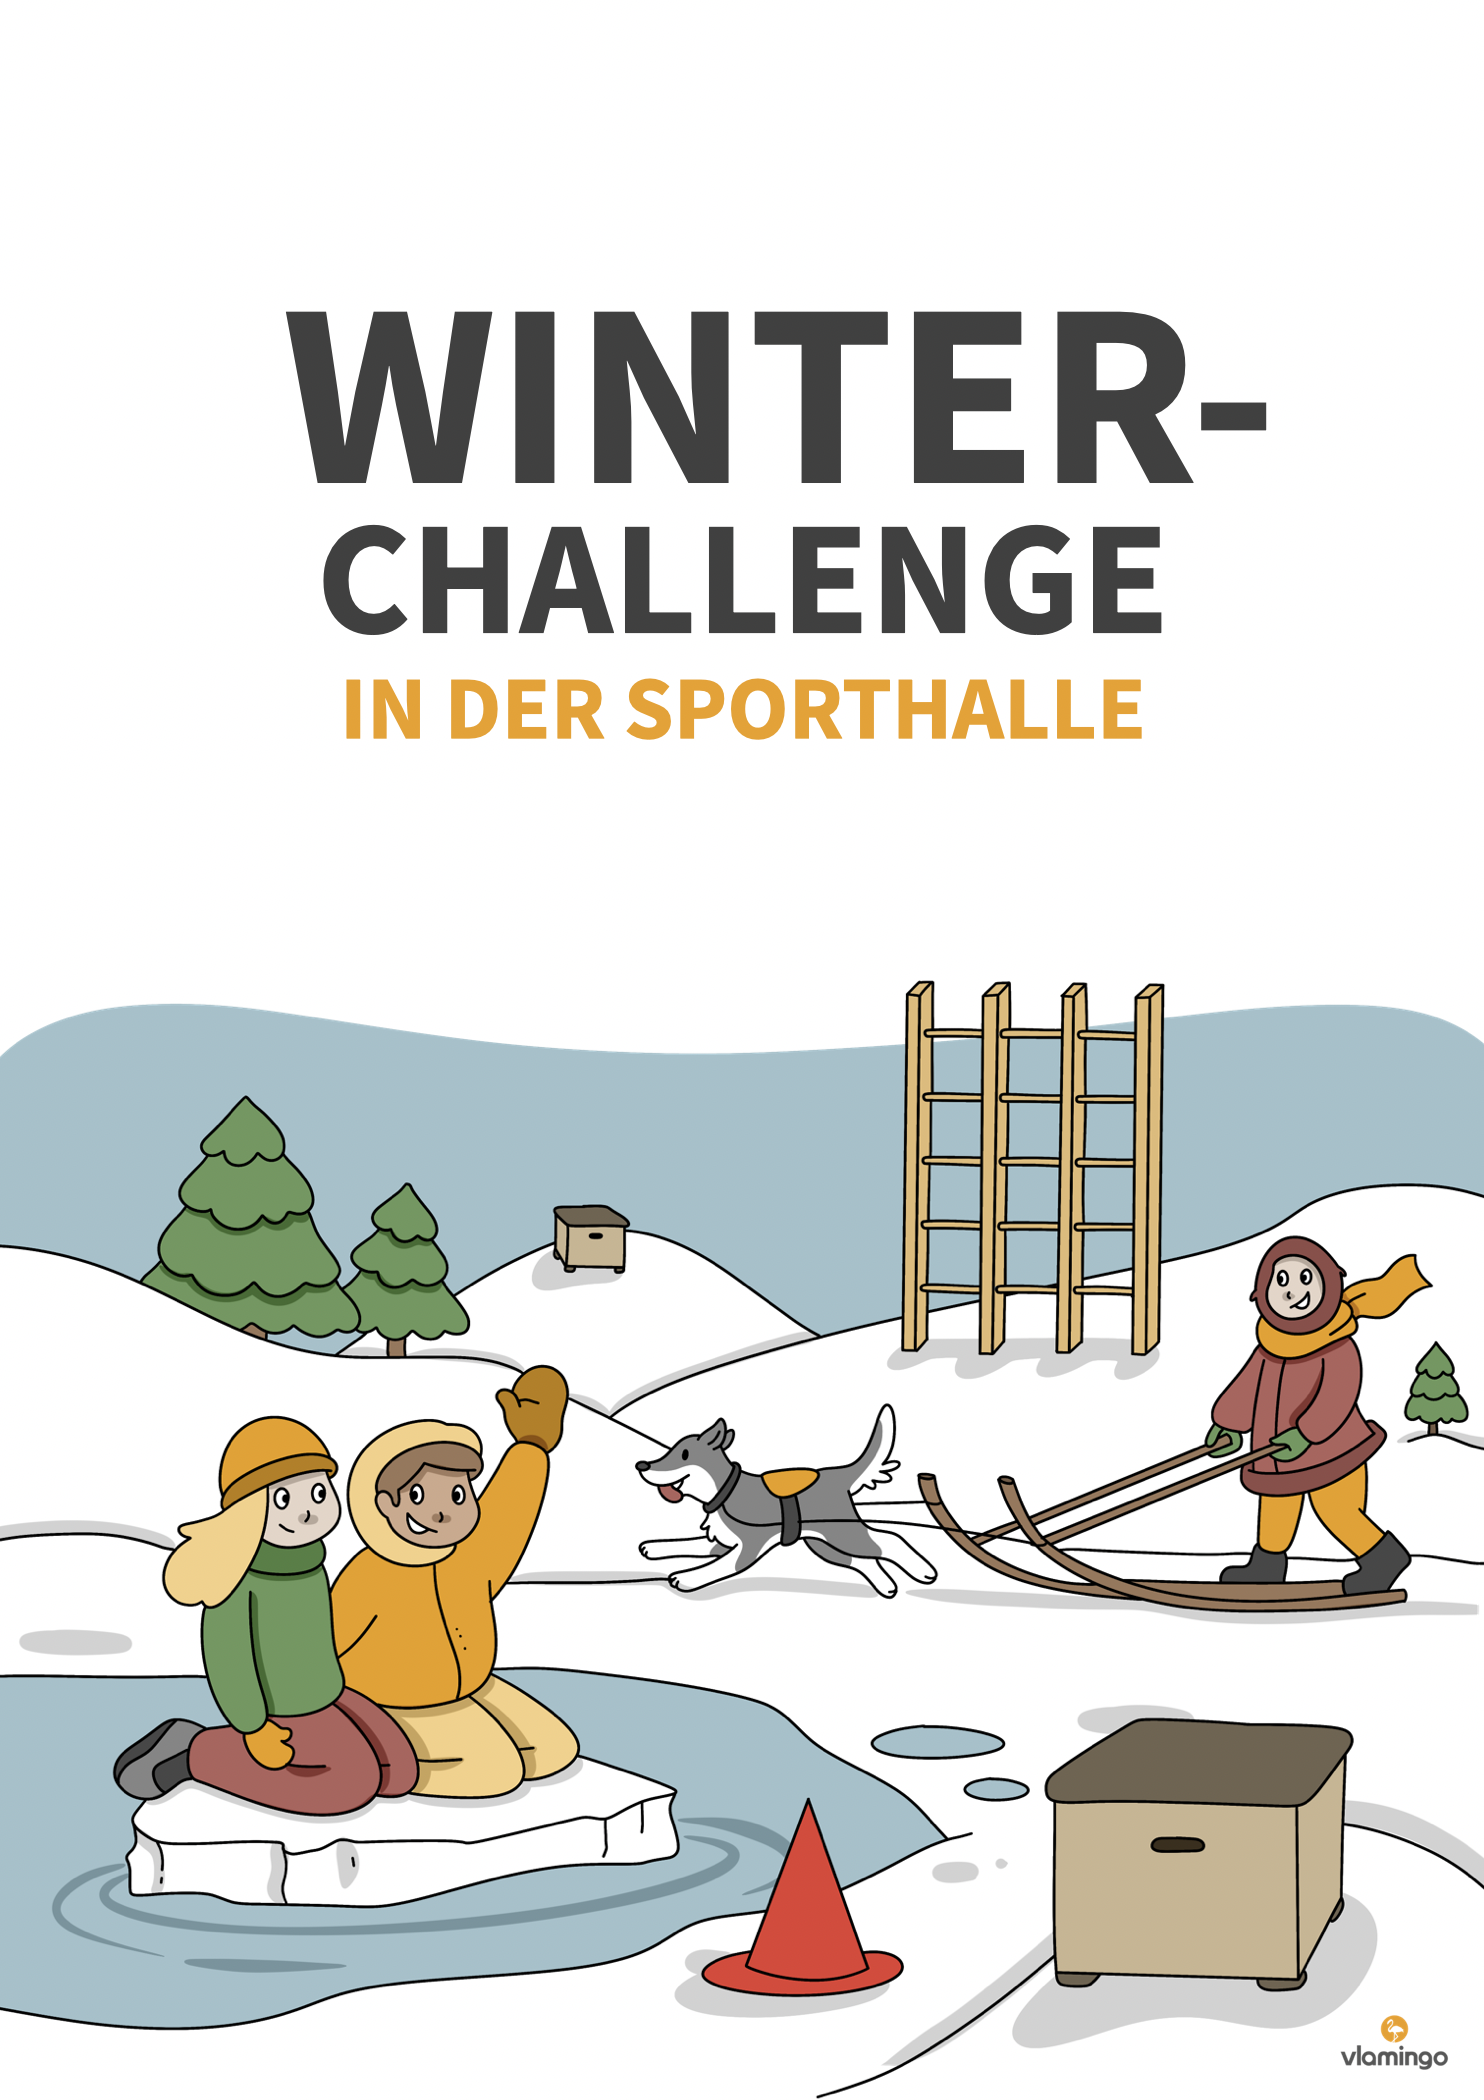 Winter-Challenge in der Sporthalle